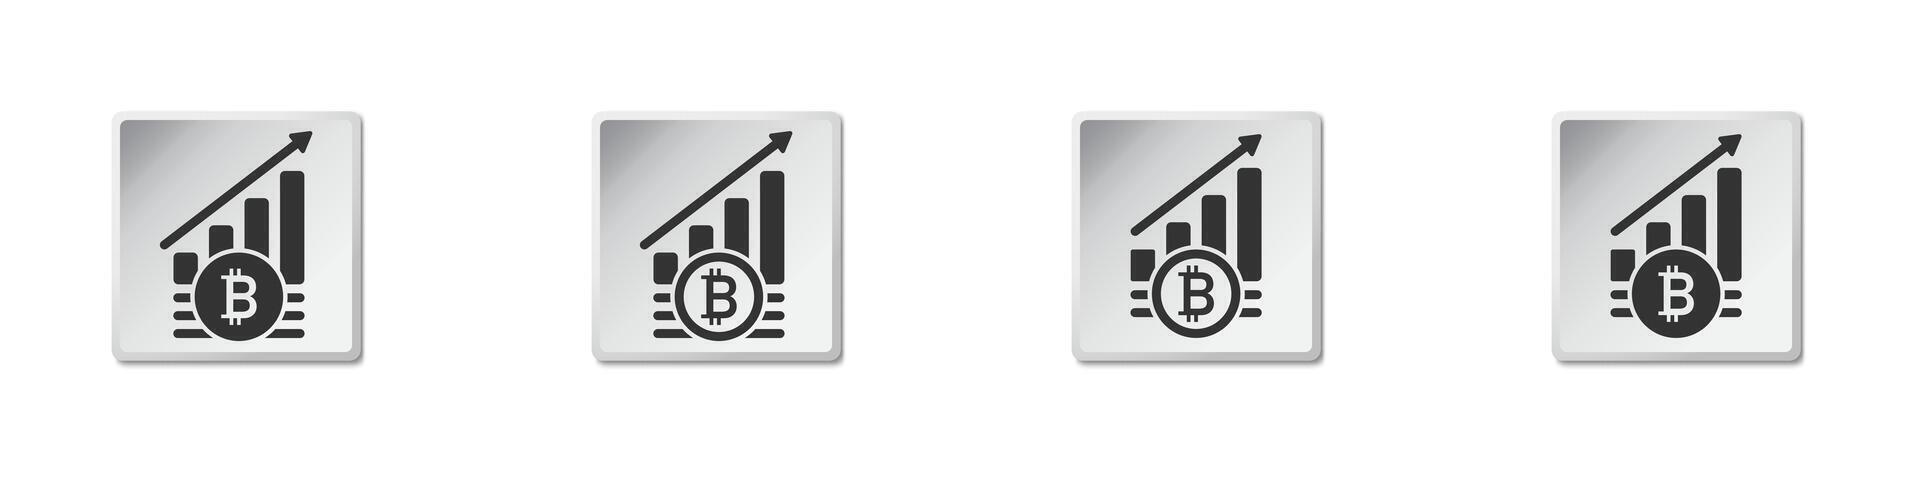 bitcoin augmenter symbole. crypto-monnaie croissance icône. plat vecteur illustration.